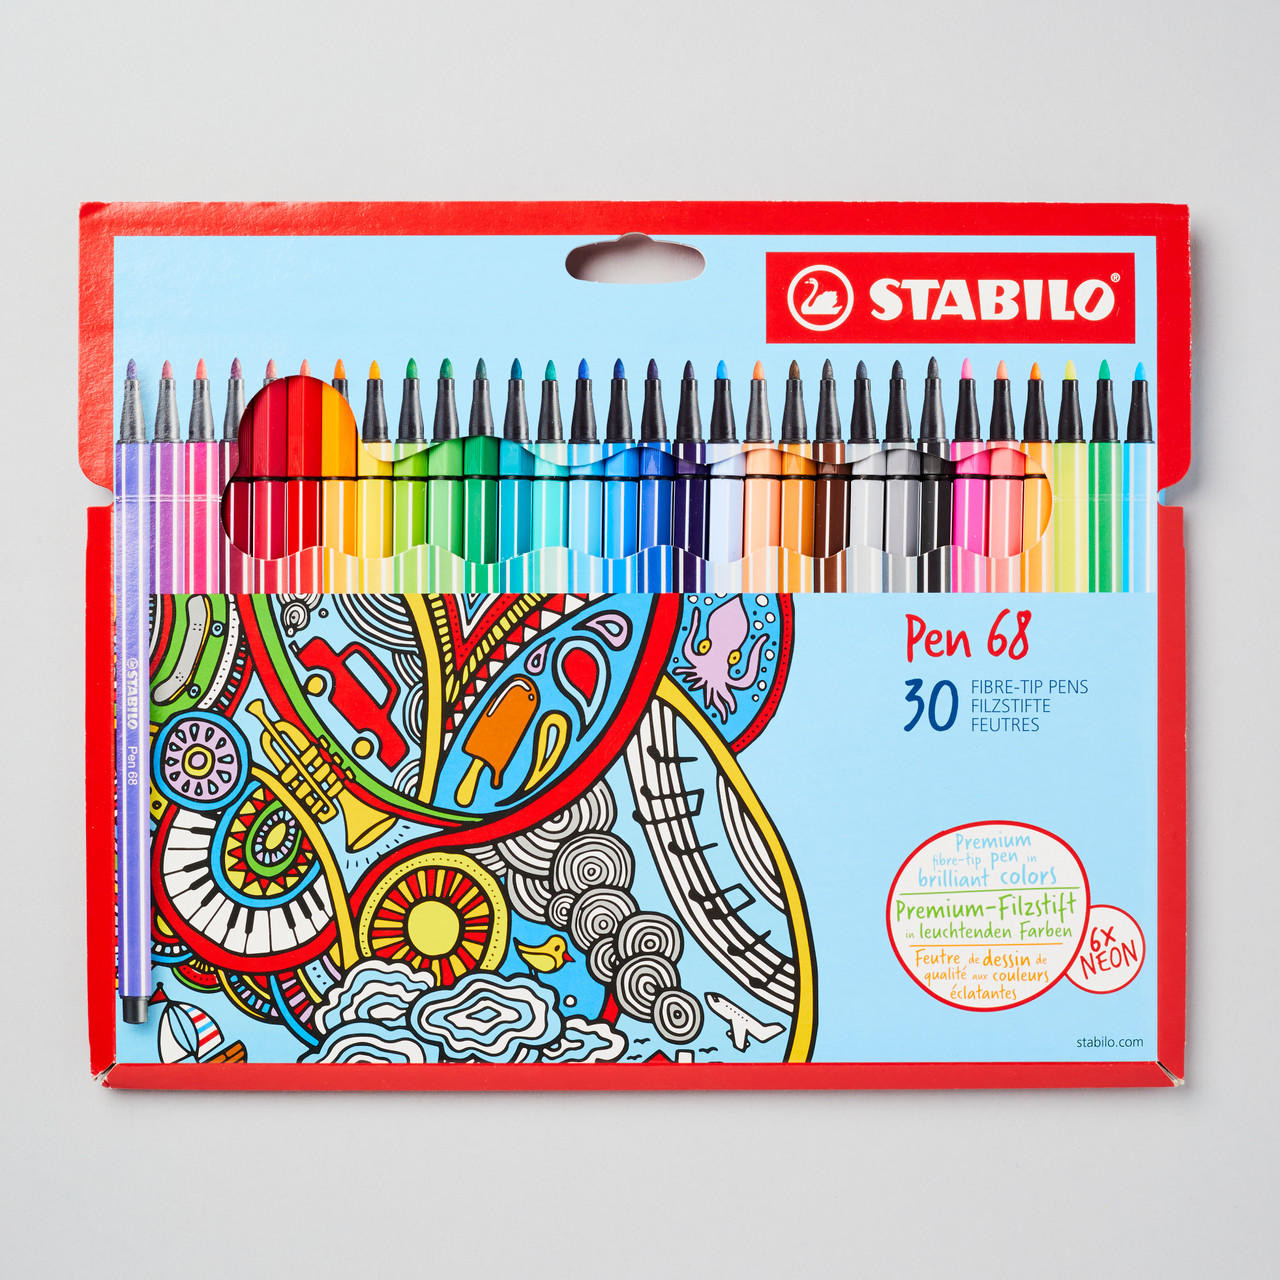 STABILO Pen 68 Set of 30